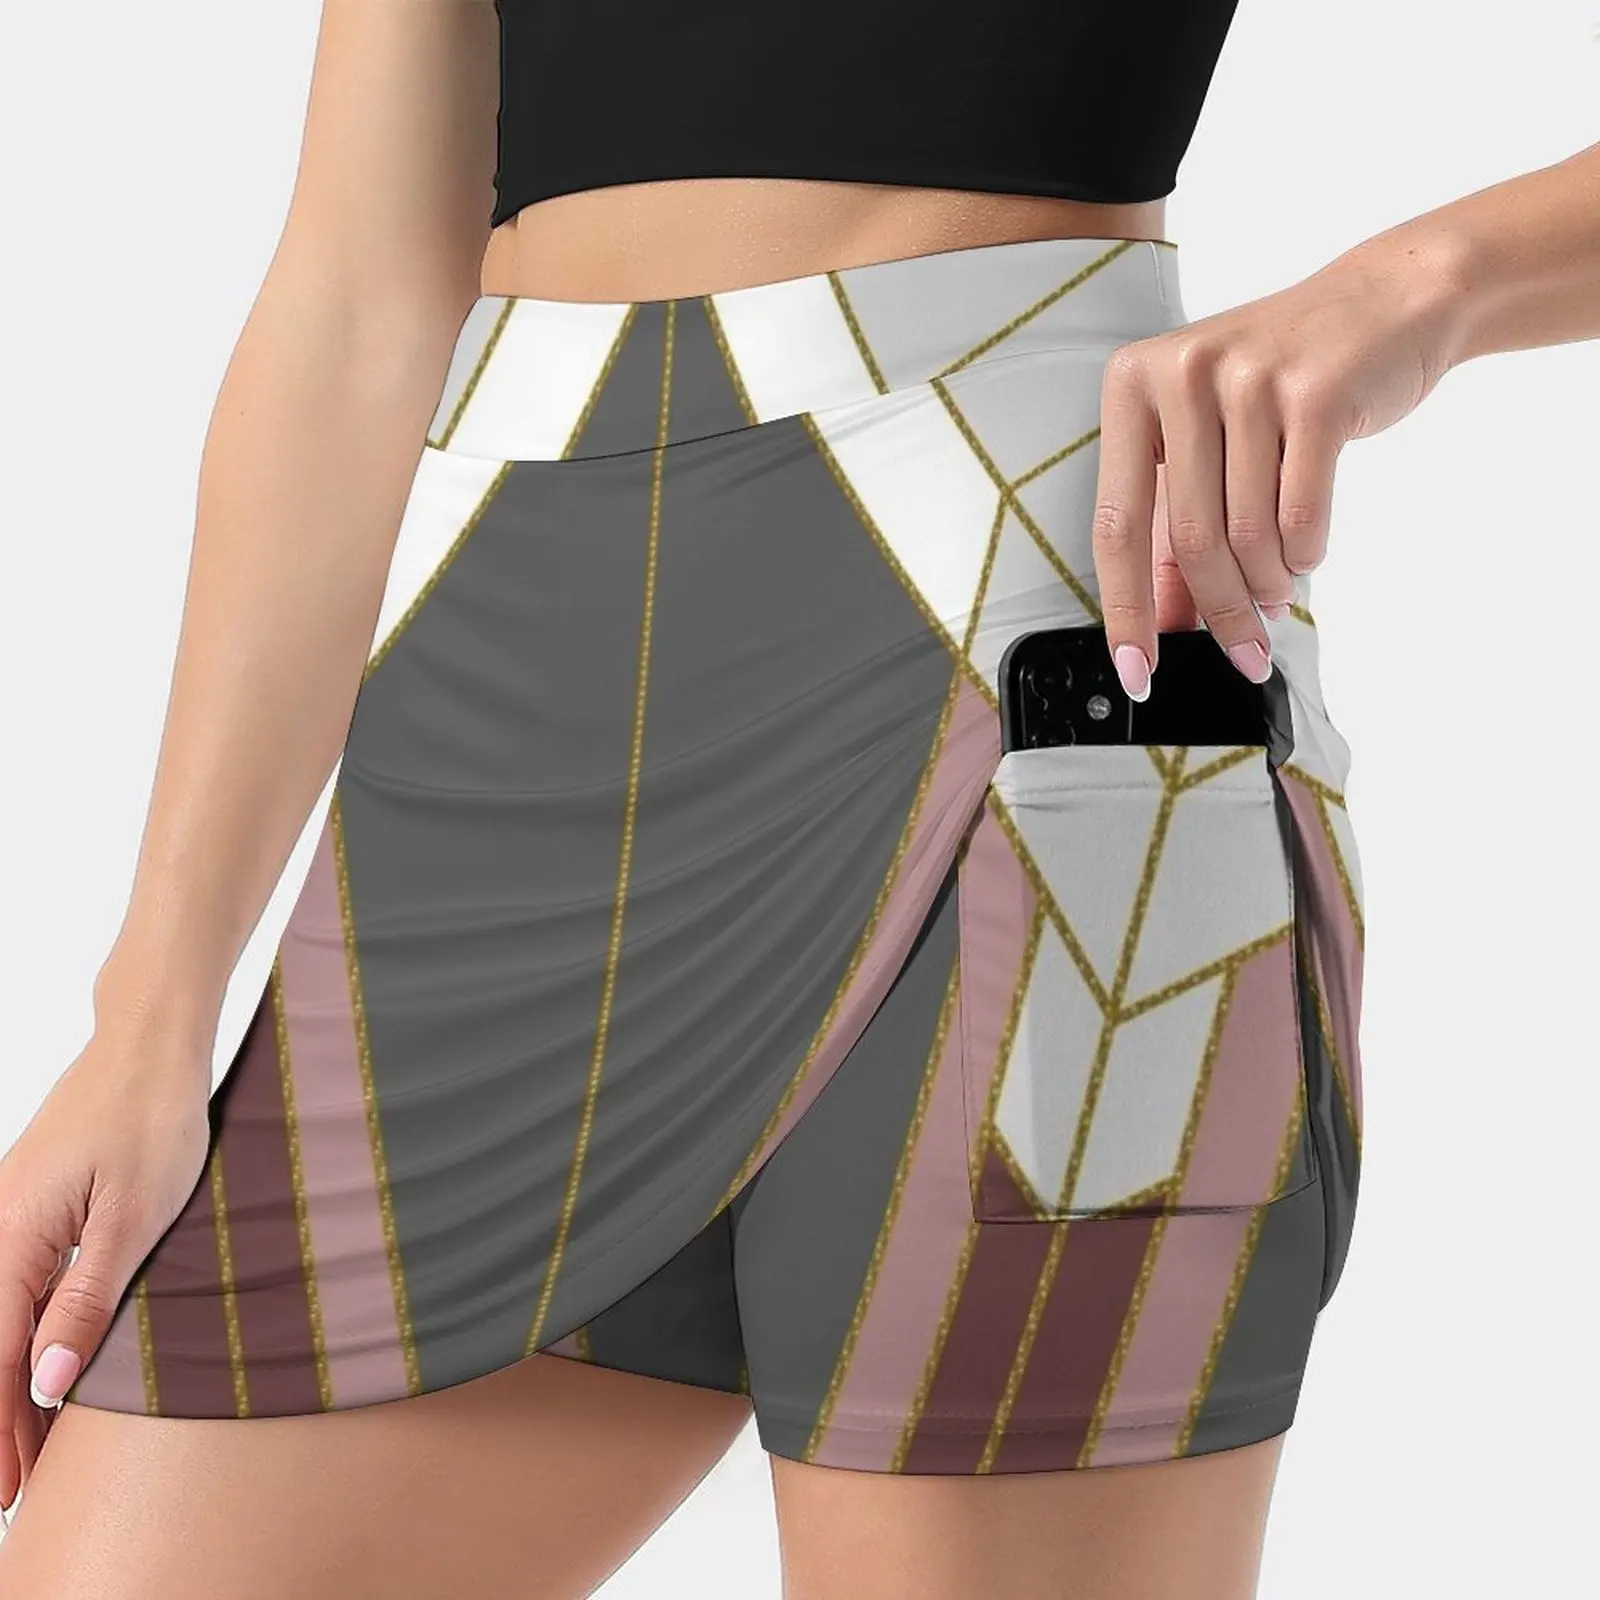 

Женская короткая юбка в стиле арт-деко, золотисто-серая офисная мини-юбка с геометрическим абстрактным геометрическим рисунком, G1, 2022